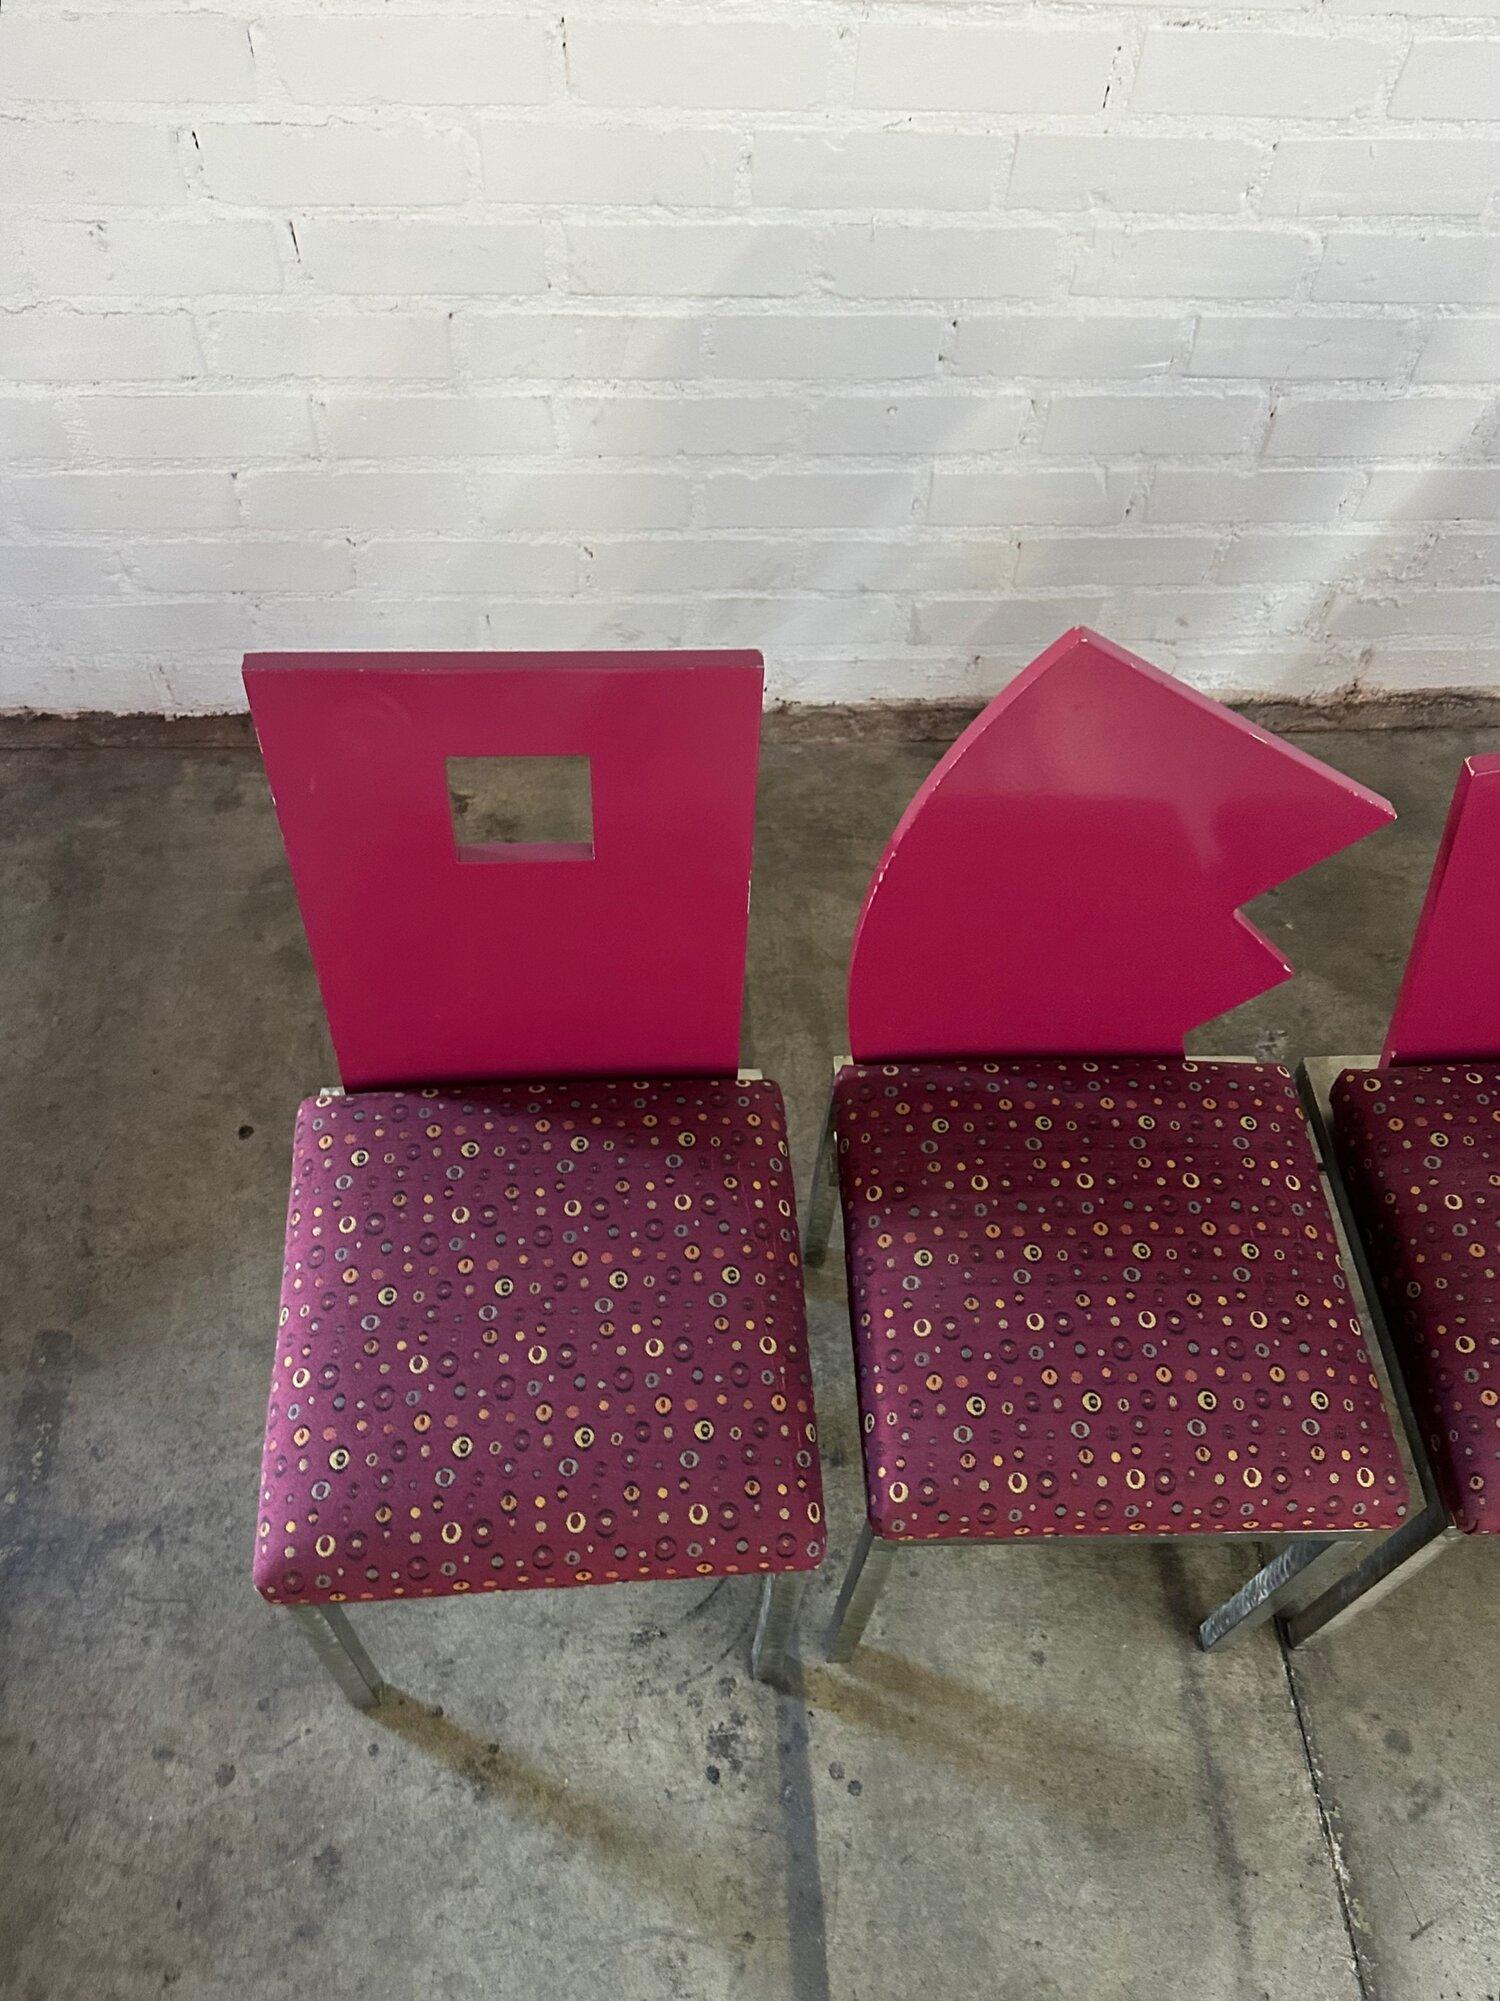 W17 D18 H36 SW15.5 SD16 SH18.5

Chaises de salle à manger post-modernes dans le style de Saporiti. Chaque chaise présente un dossier de forme différente en magenta foncé laqué, avec une assise rembourrée à motifs magenta. Les châssis des chaises